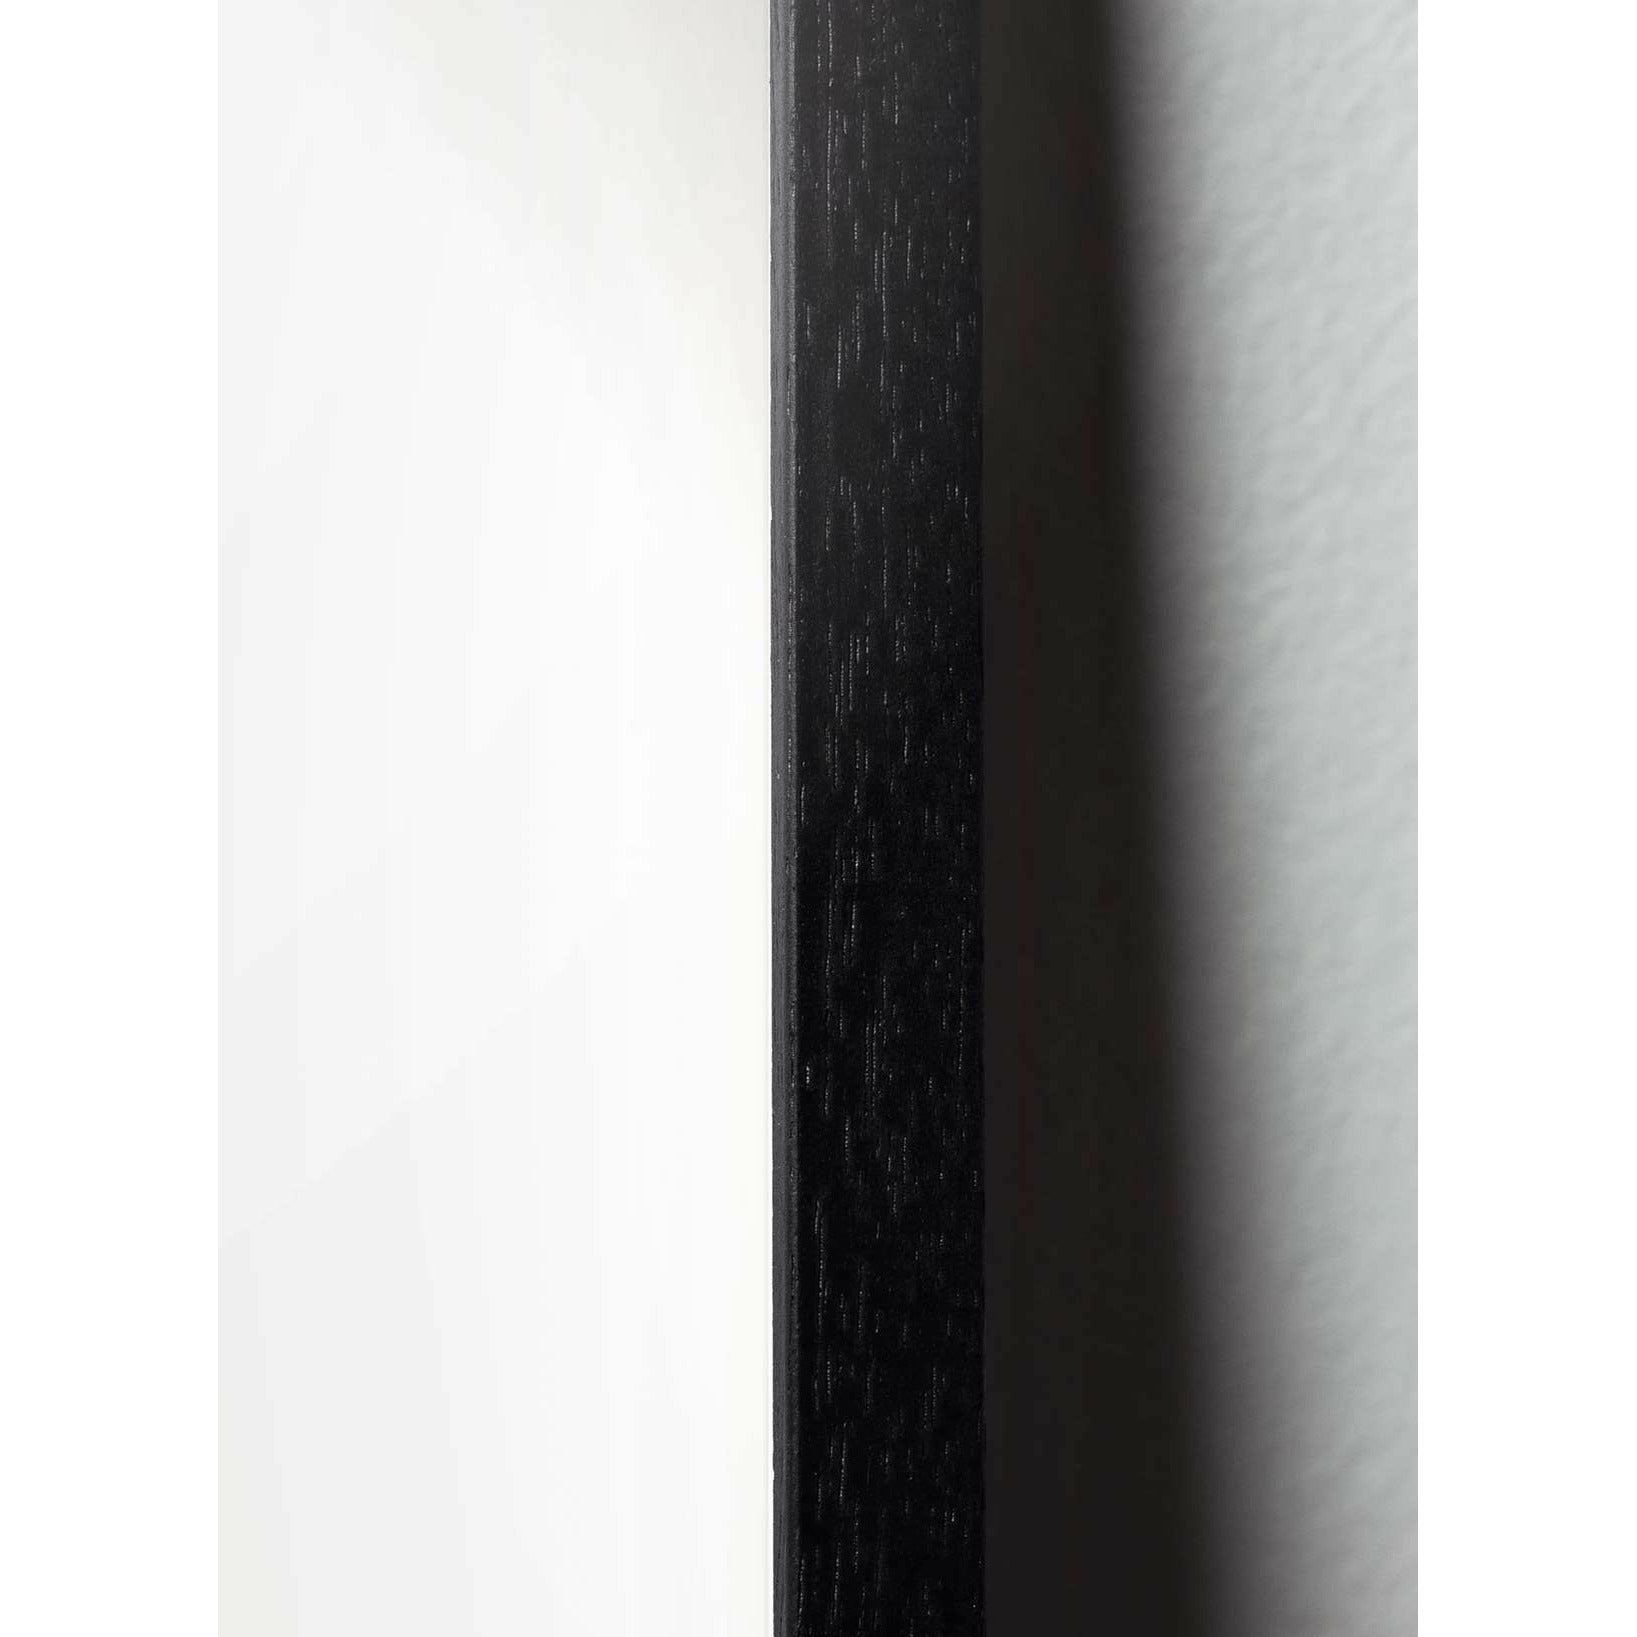 Pomysny plakat Teddy Bear, rama w czarnym lakierowanym drewnie 30x40 cm, tło w kolorze piasku